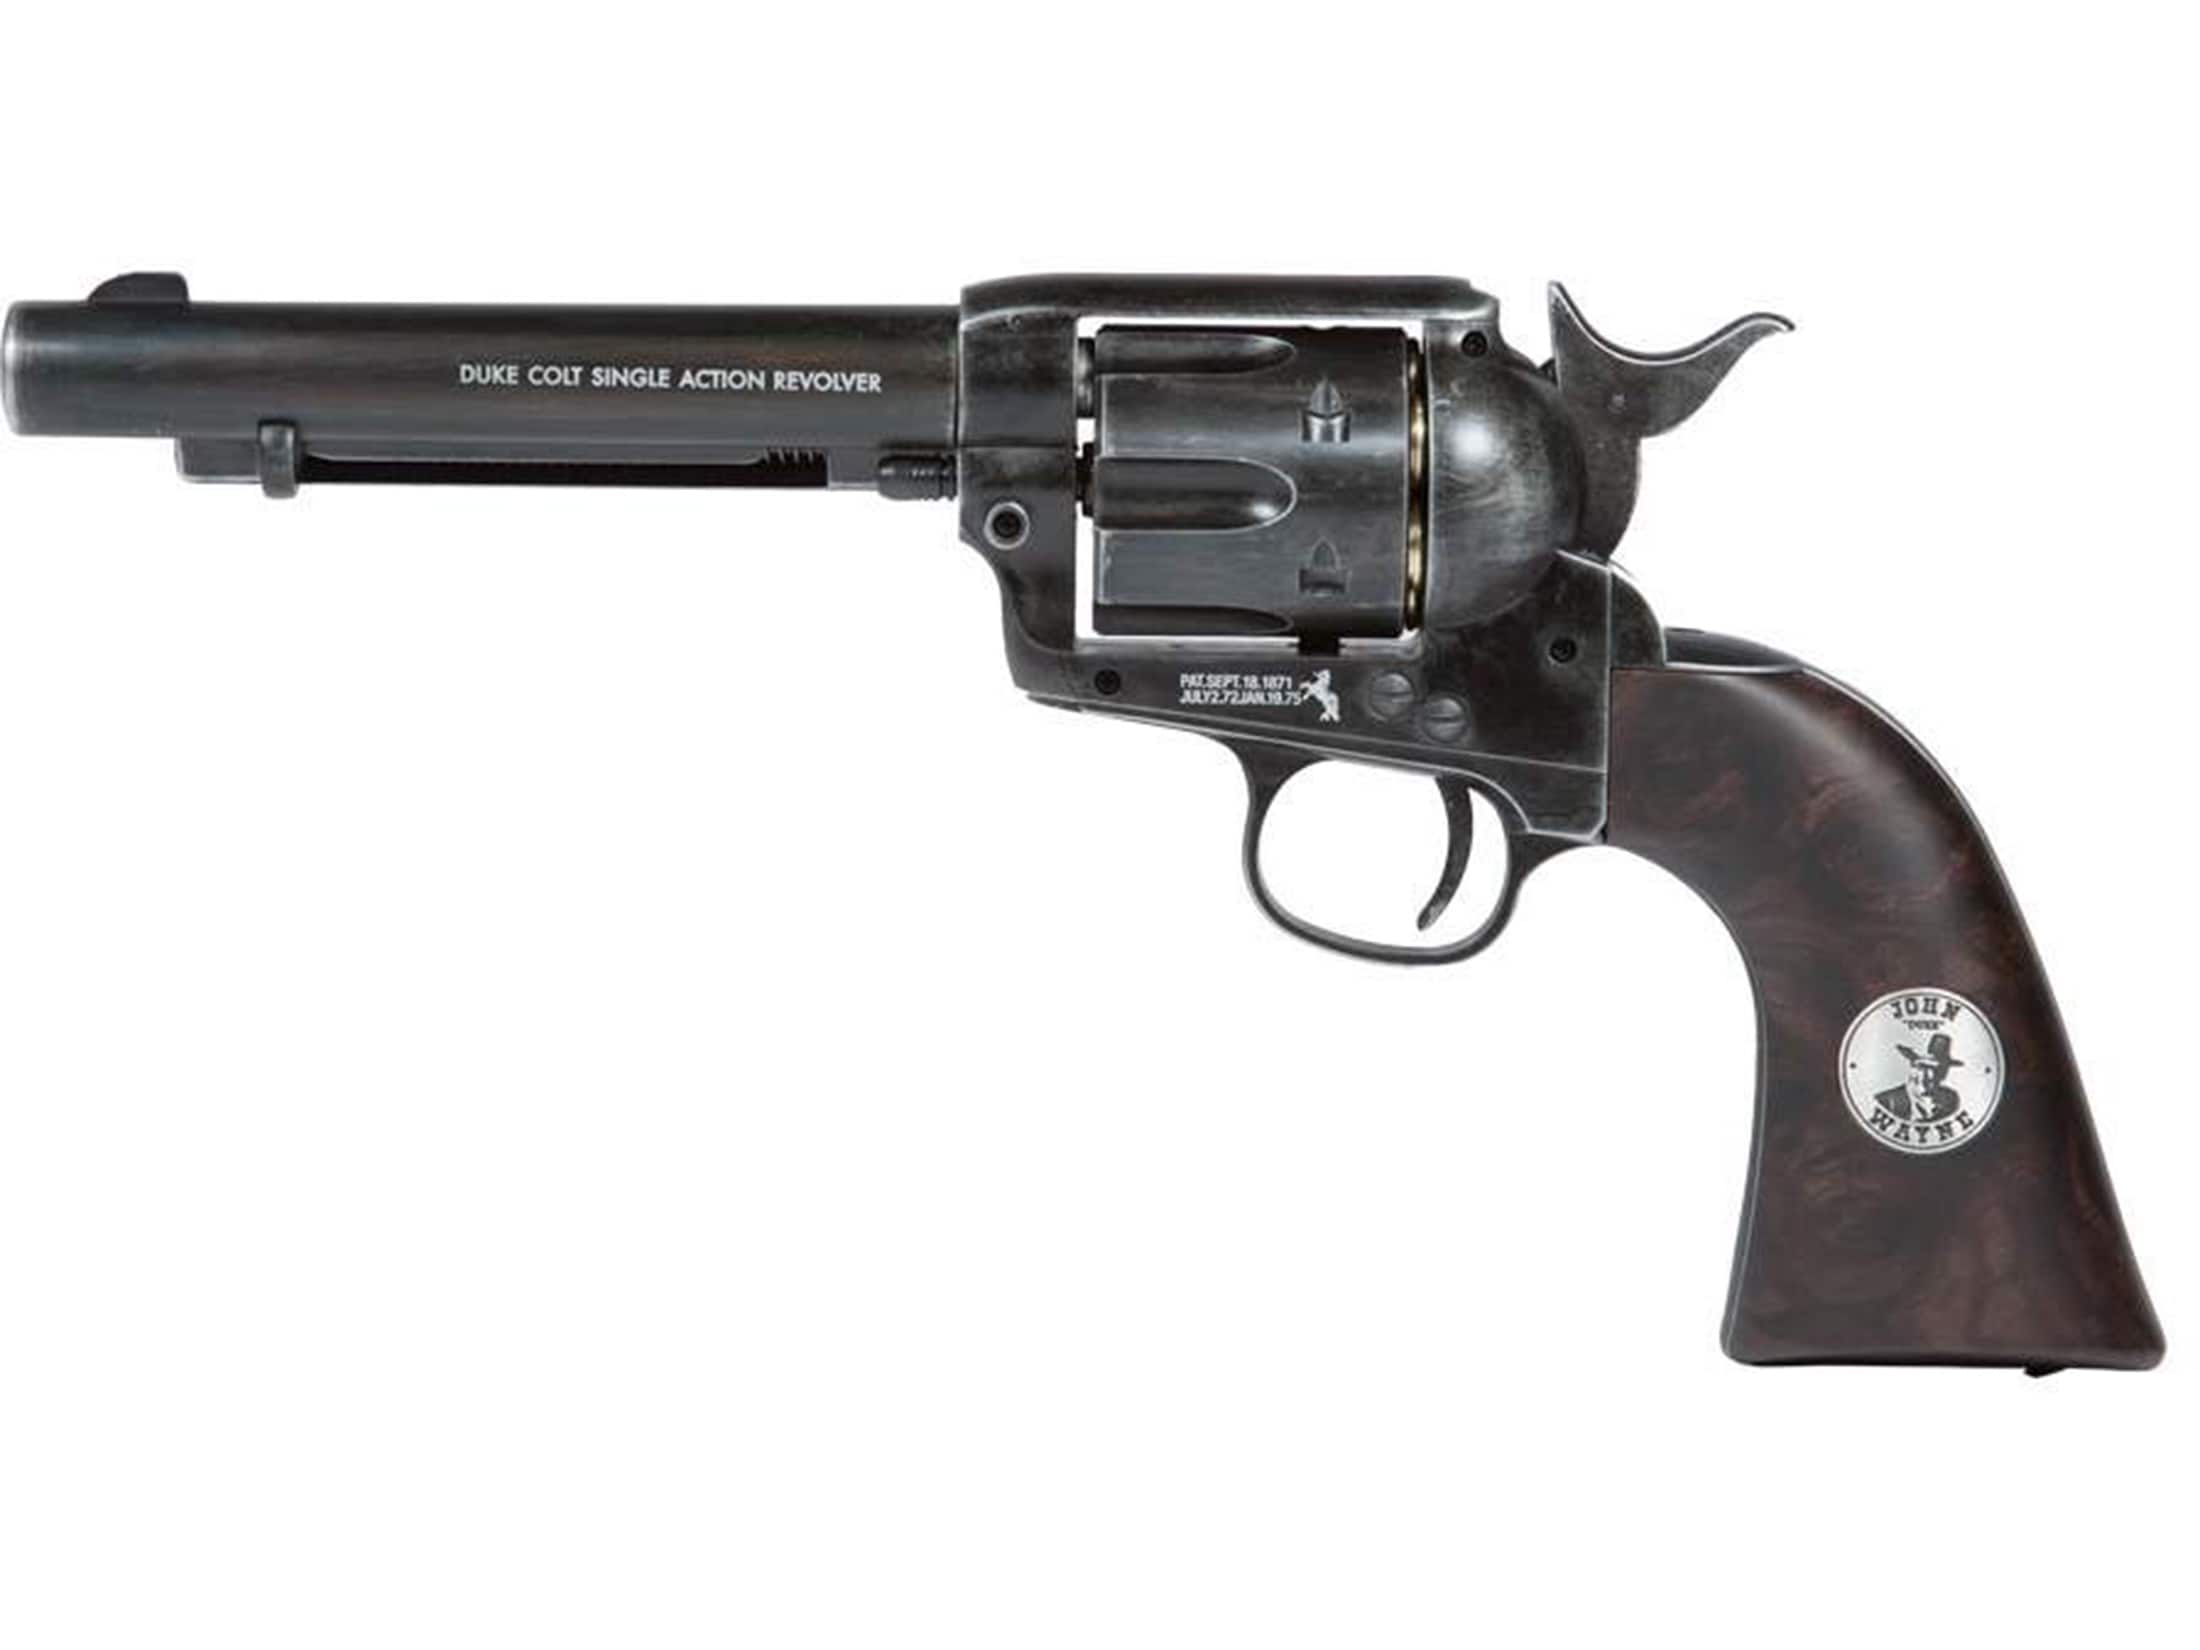 Colt Duke CO2 177 Caliber Revolver Pellet Air Pistol For Sale